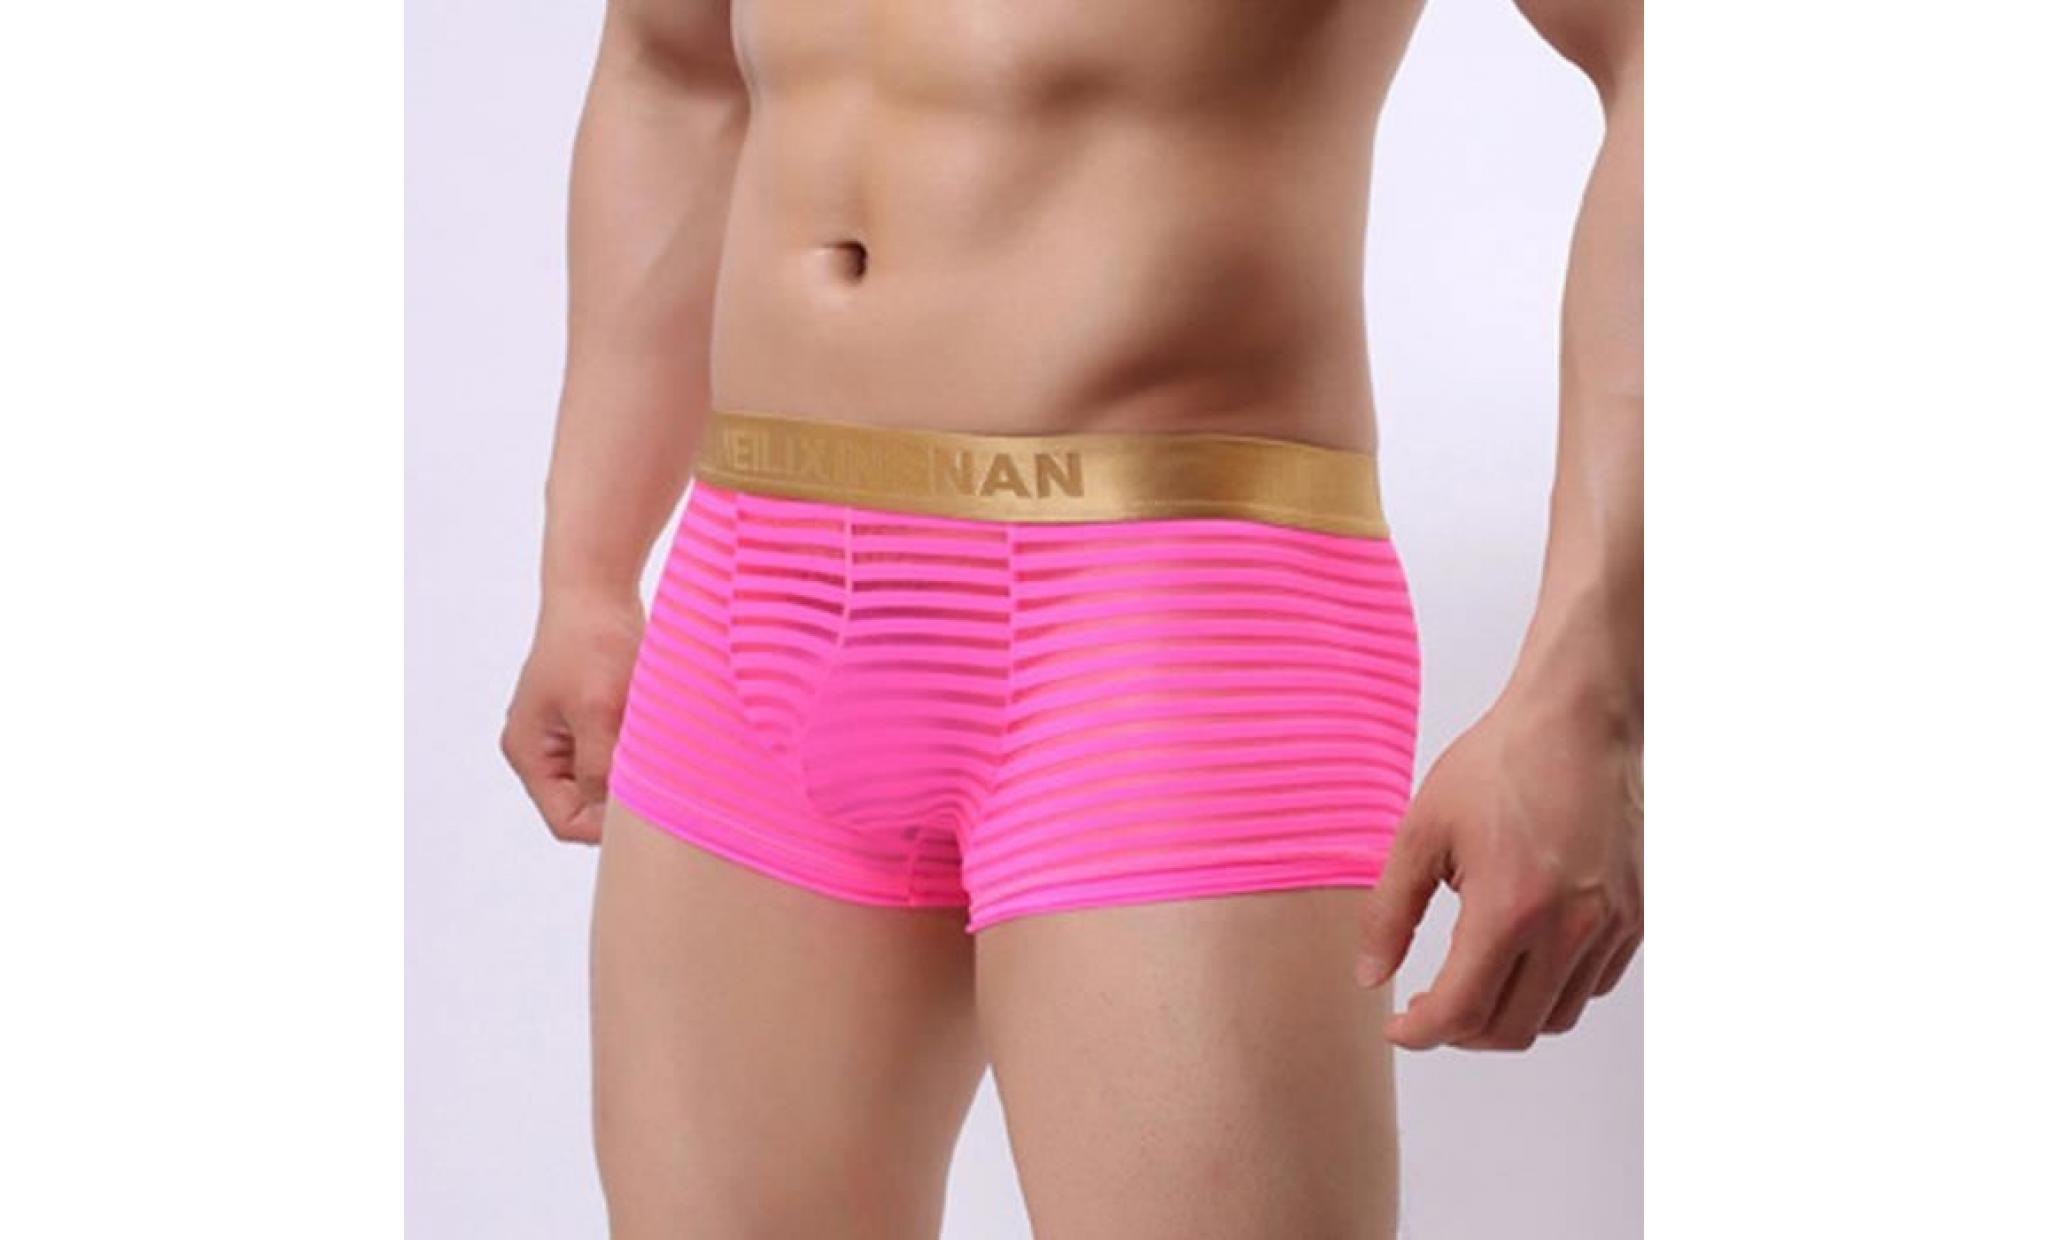 mode hommes striped transparent boxer briefs taille basse sexy shorts sous vêtements rose m